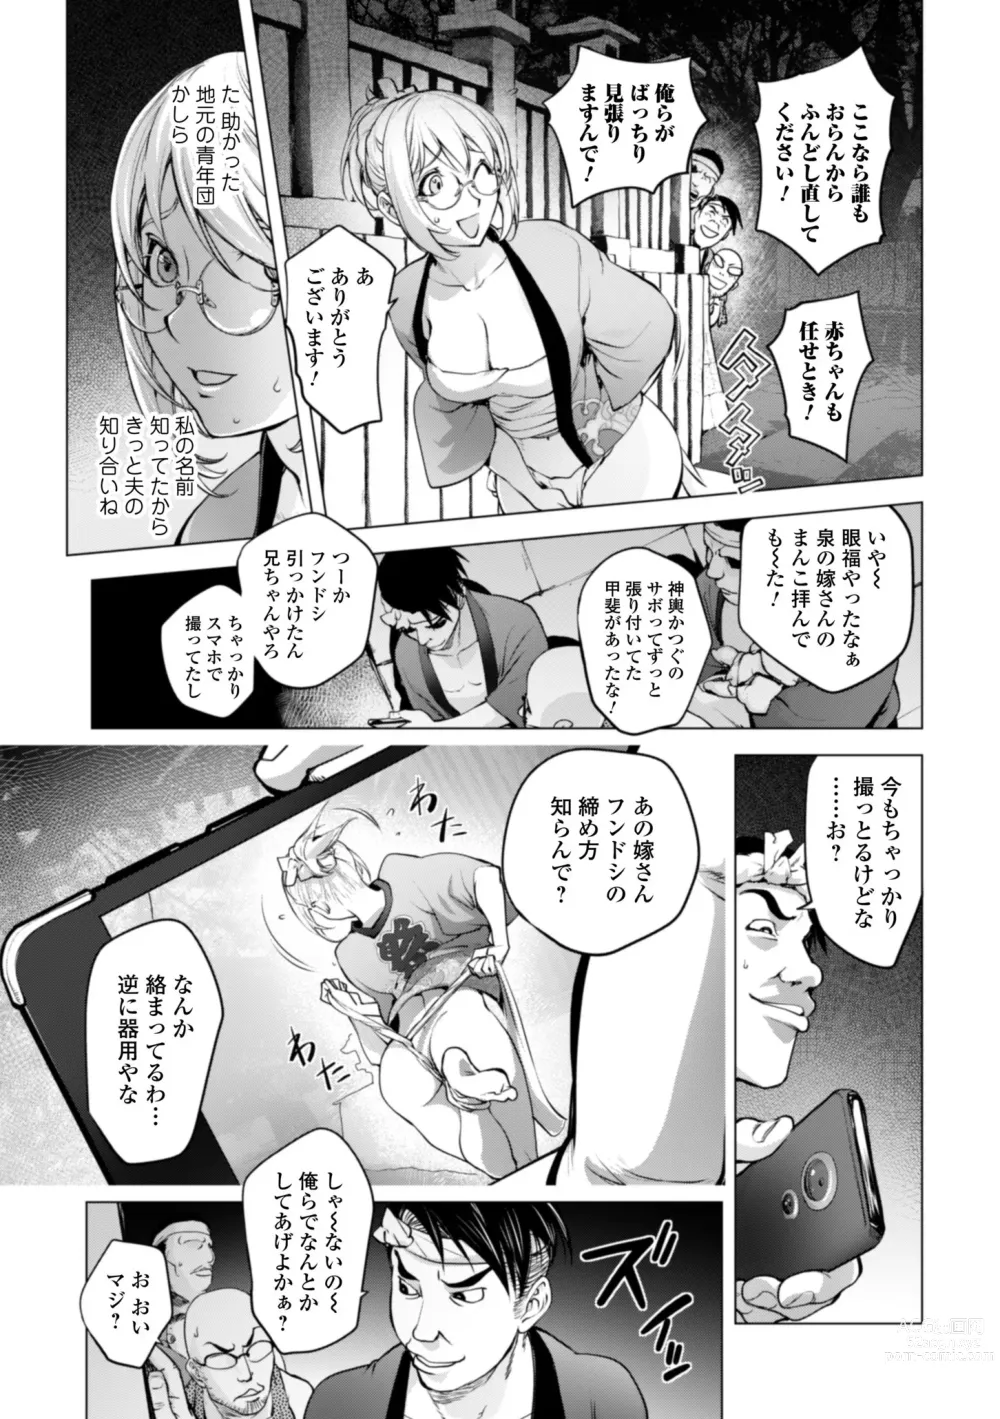 Page 5 of manga Kaya-nee no Fundoshi Matsuri